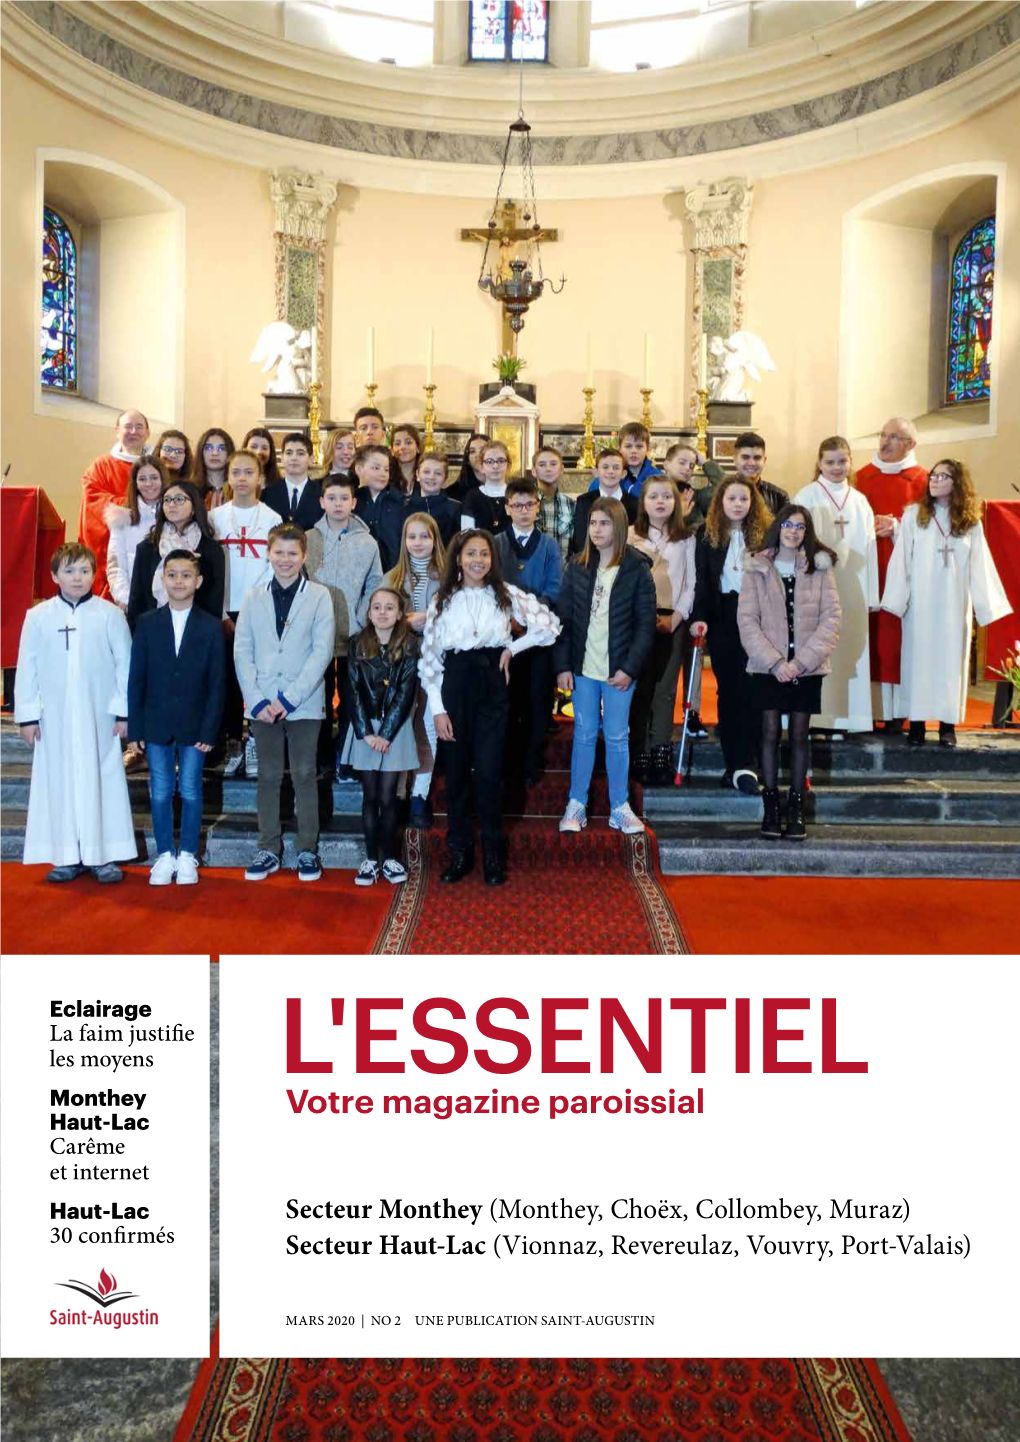 Mars 2020 | No 2 Une Publication Saint-Augustin Messes Du Secteur Monthey / Adresses